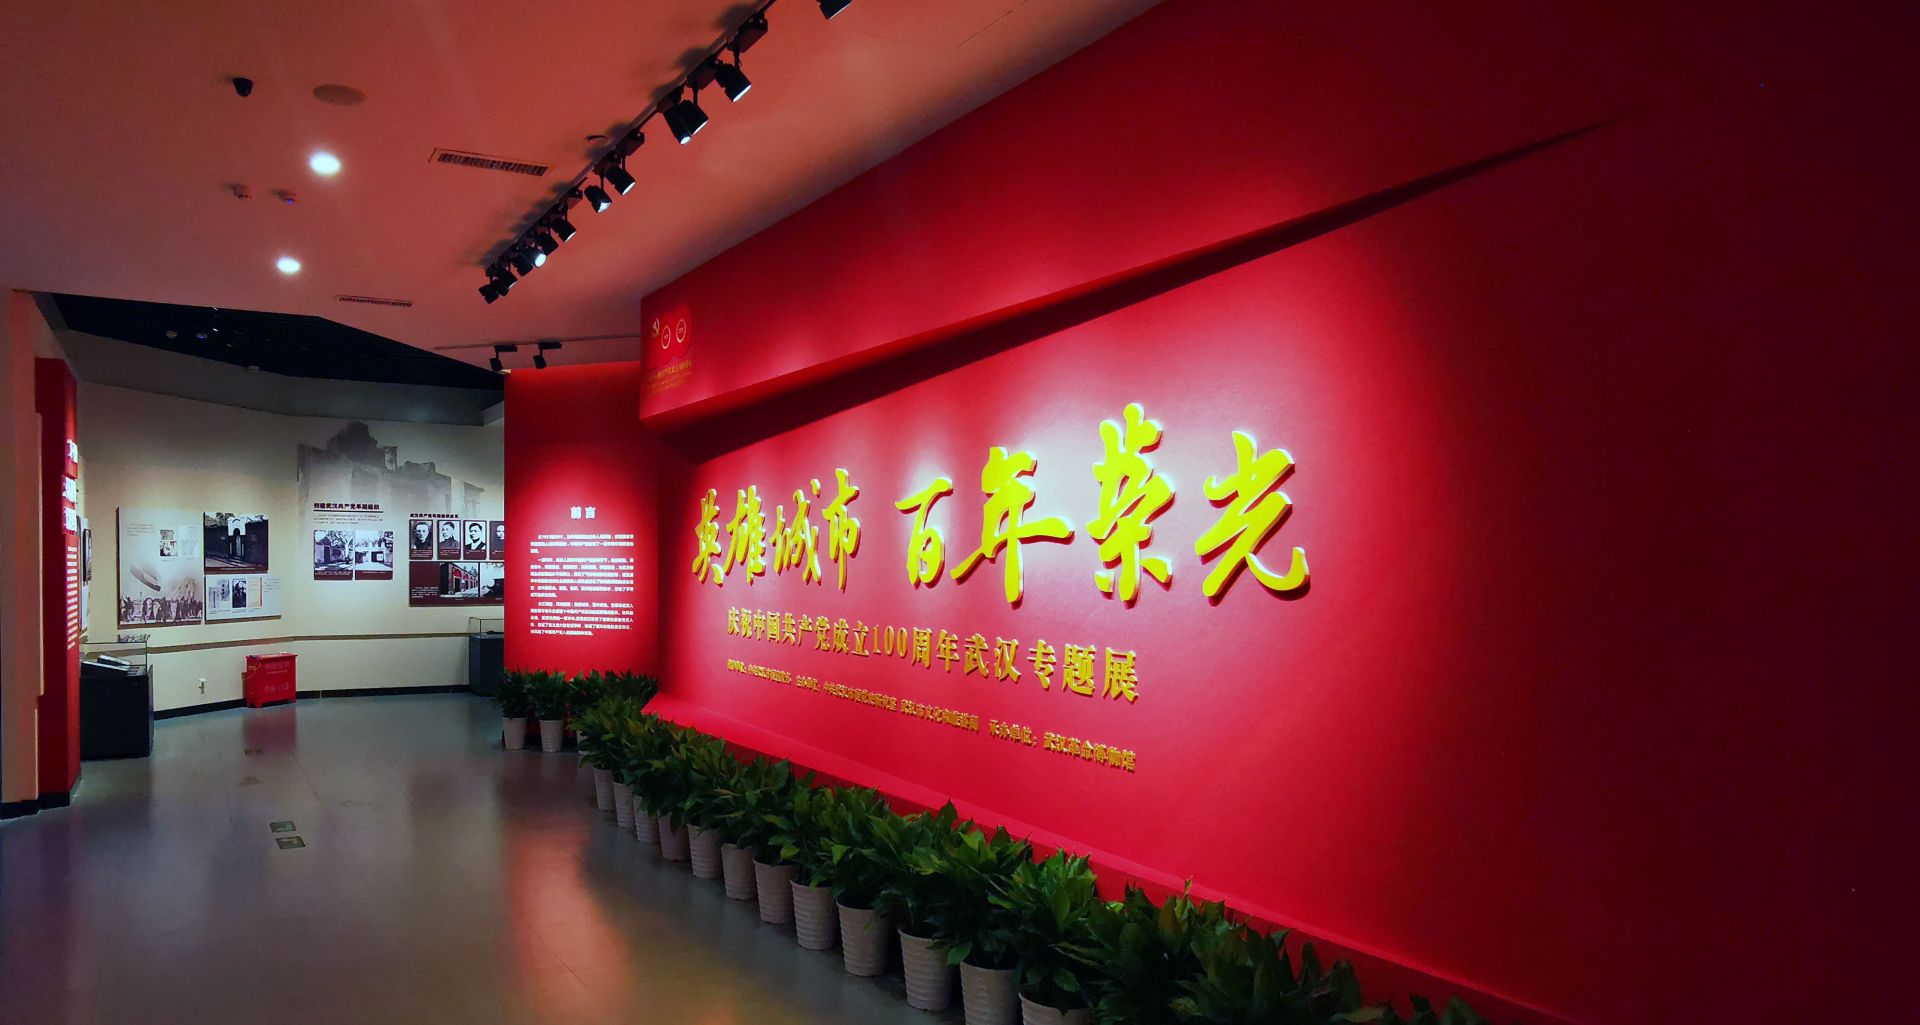 荣光——庆祝中国共产党成立100周年武汉专题展"在武汉革命博物馆开展